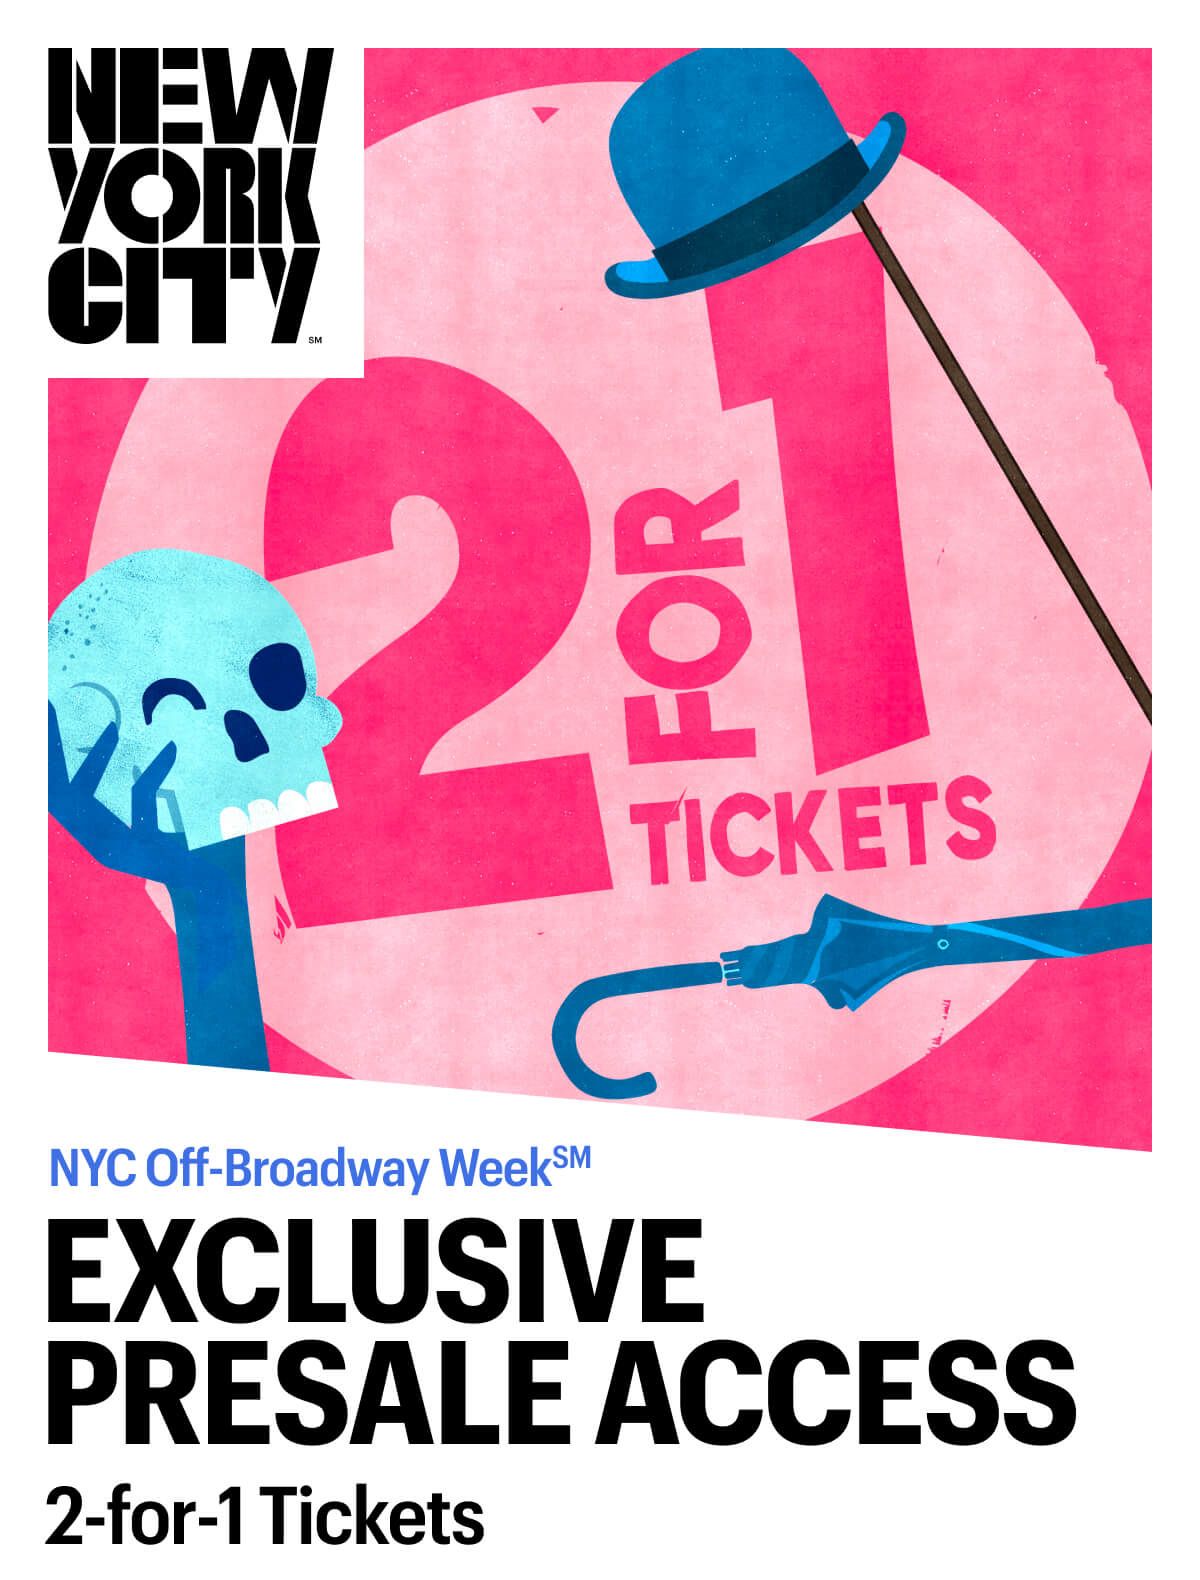 NYC Off-Broadway Week